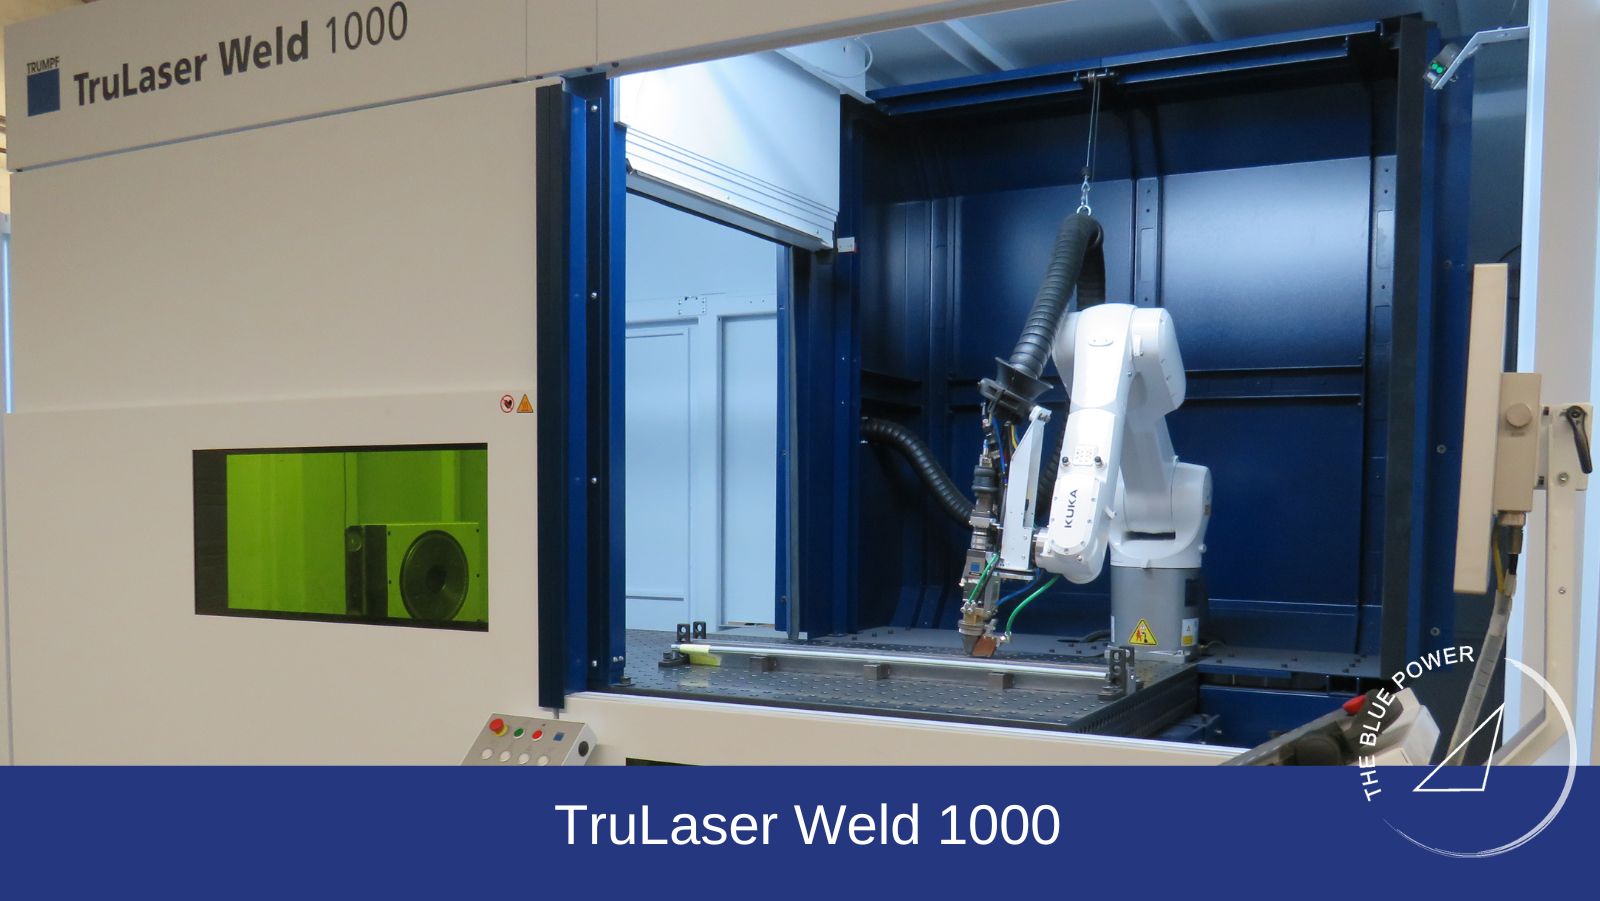 Inno-Tec omarmt laserlasinnovatie: Betere kwaliteit, groeiende vraag en enthousiast personeel.